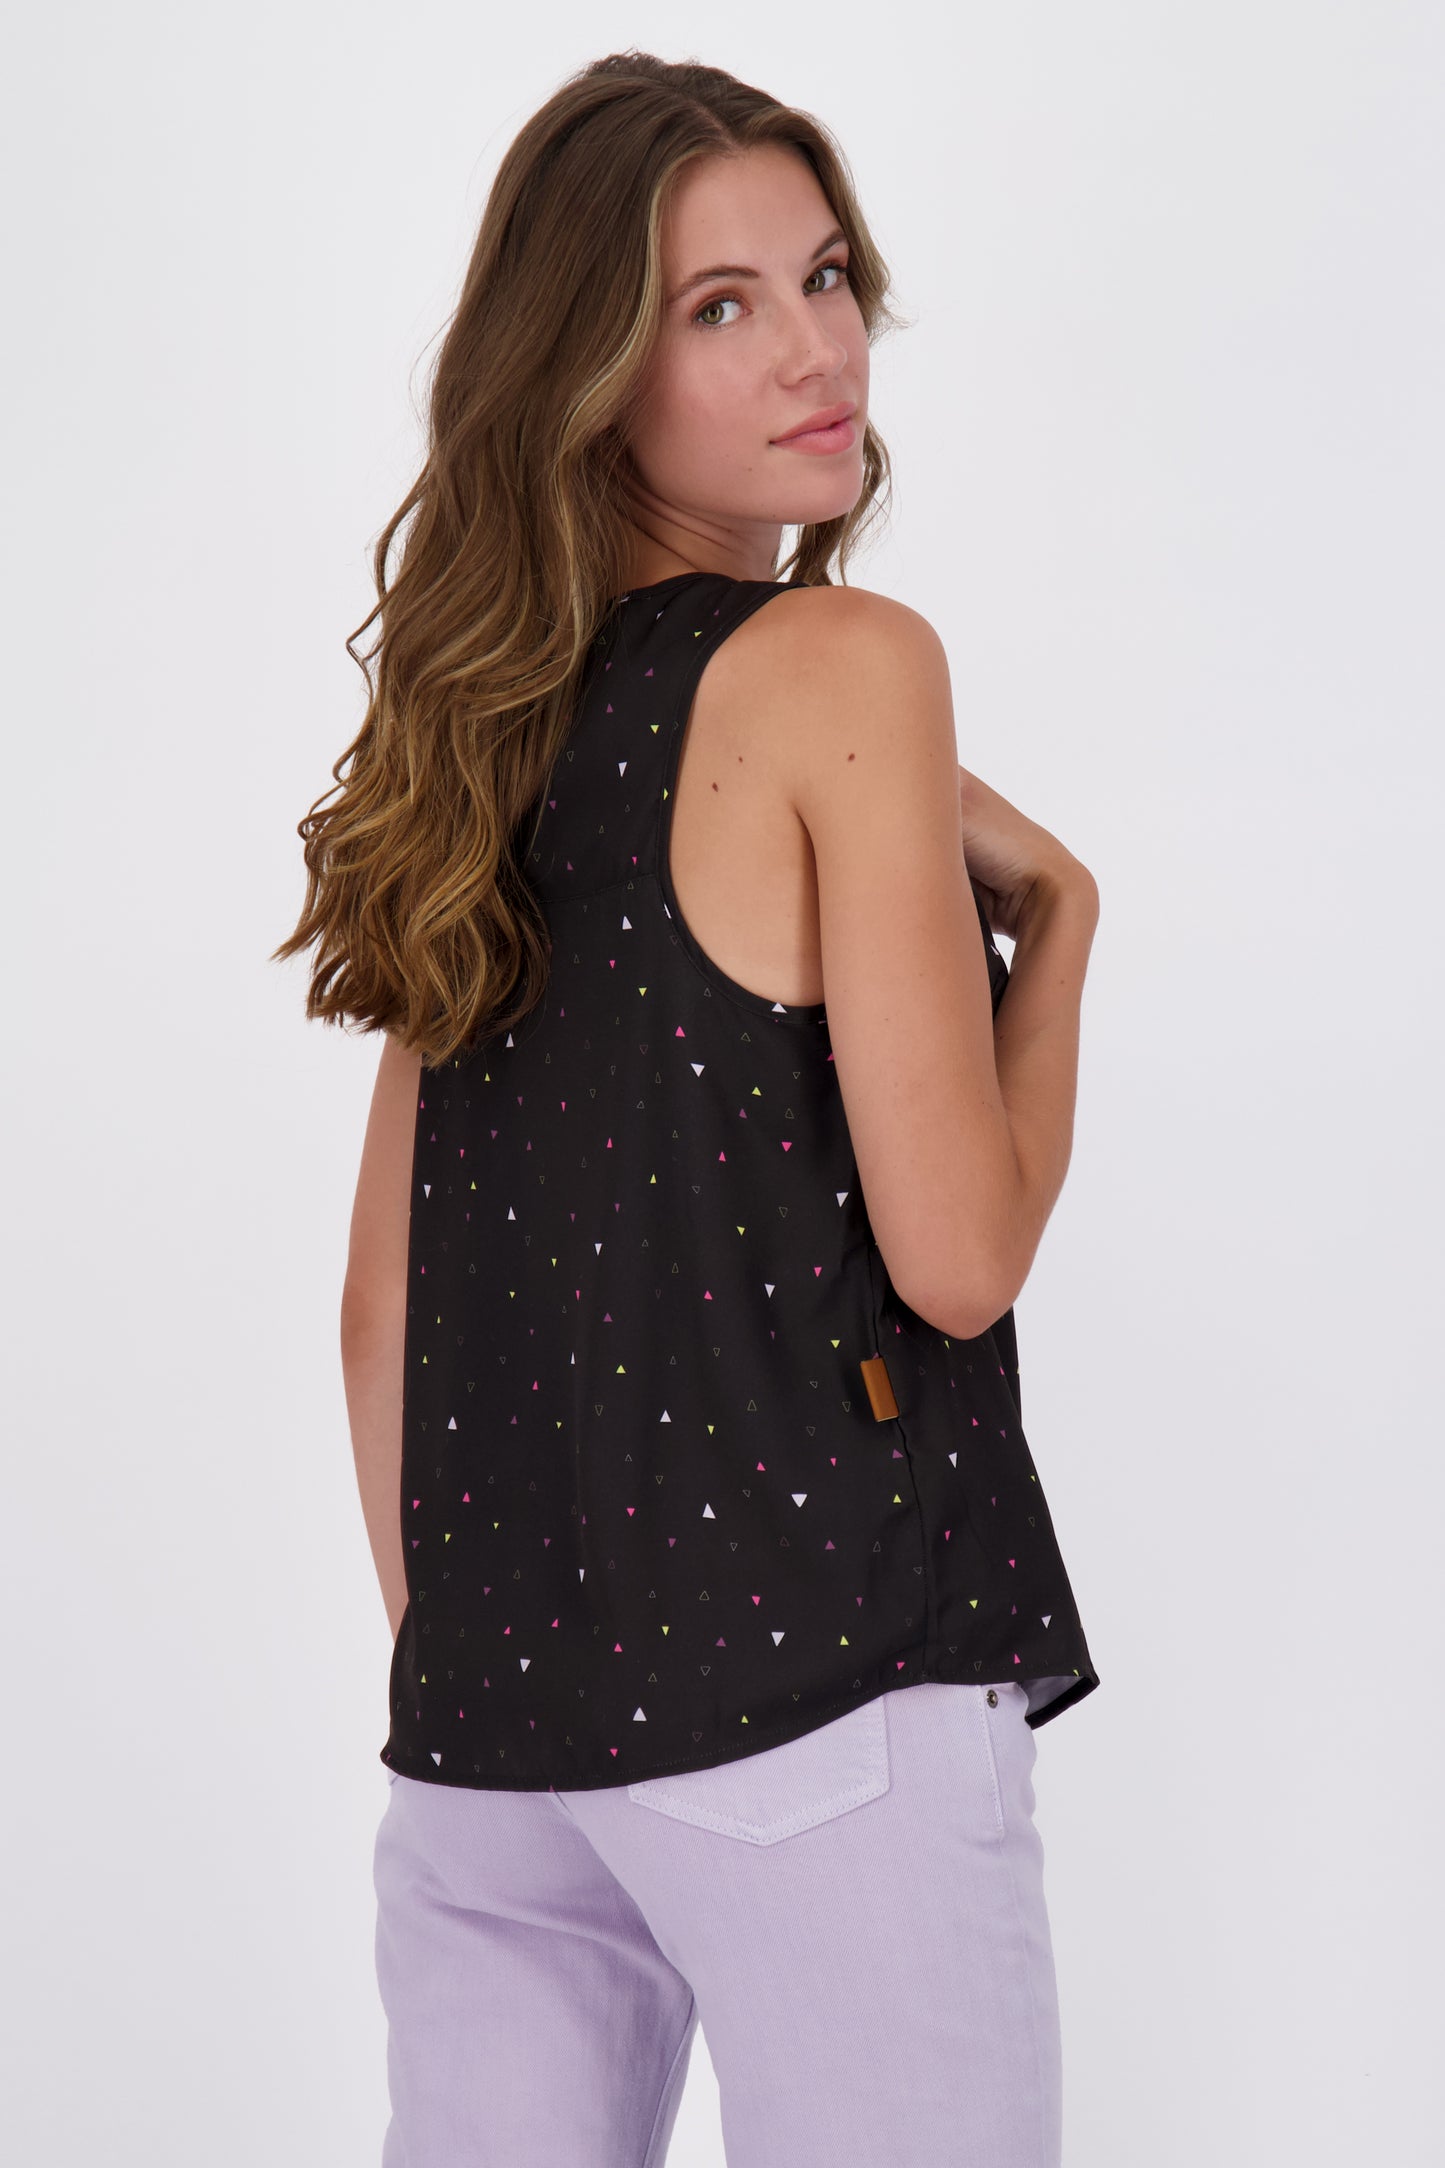 Luftig leichte Shirtbluse mit Muster GiuliaAK B für Damen Schwarz